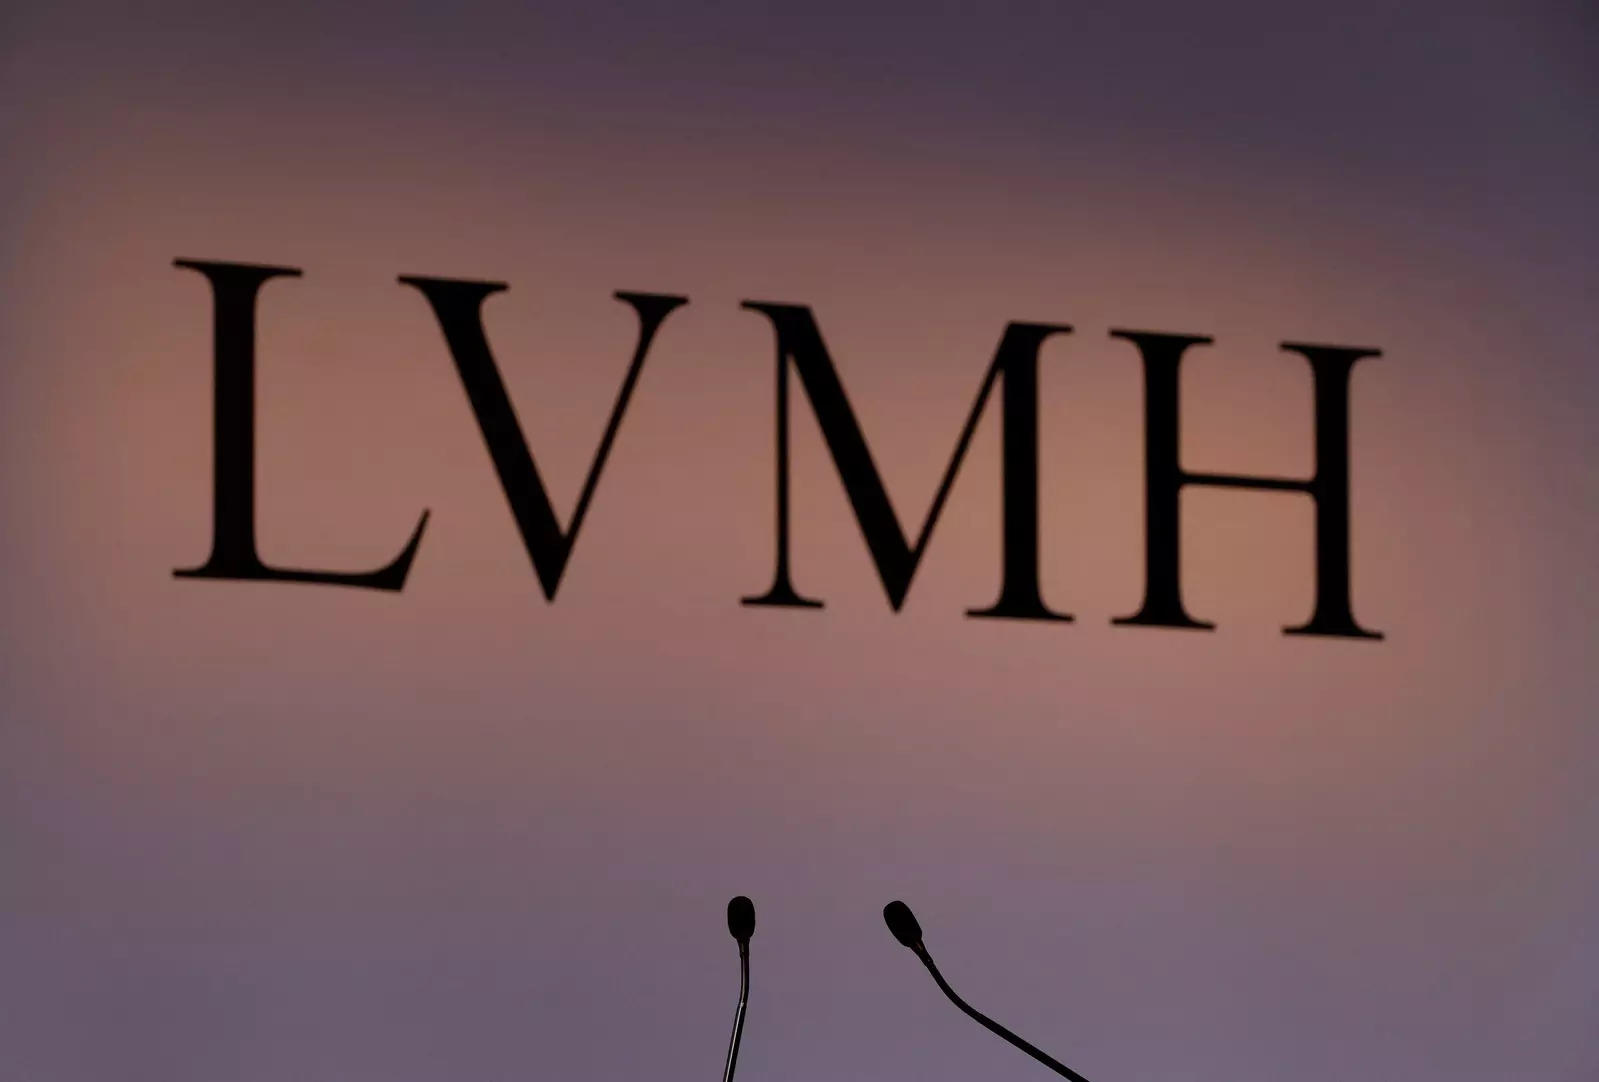 lvmh luxury goods